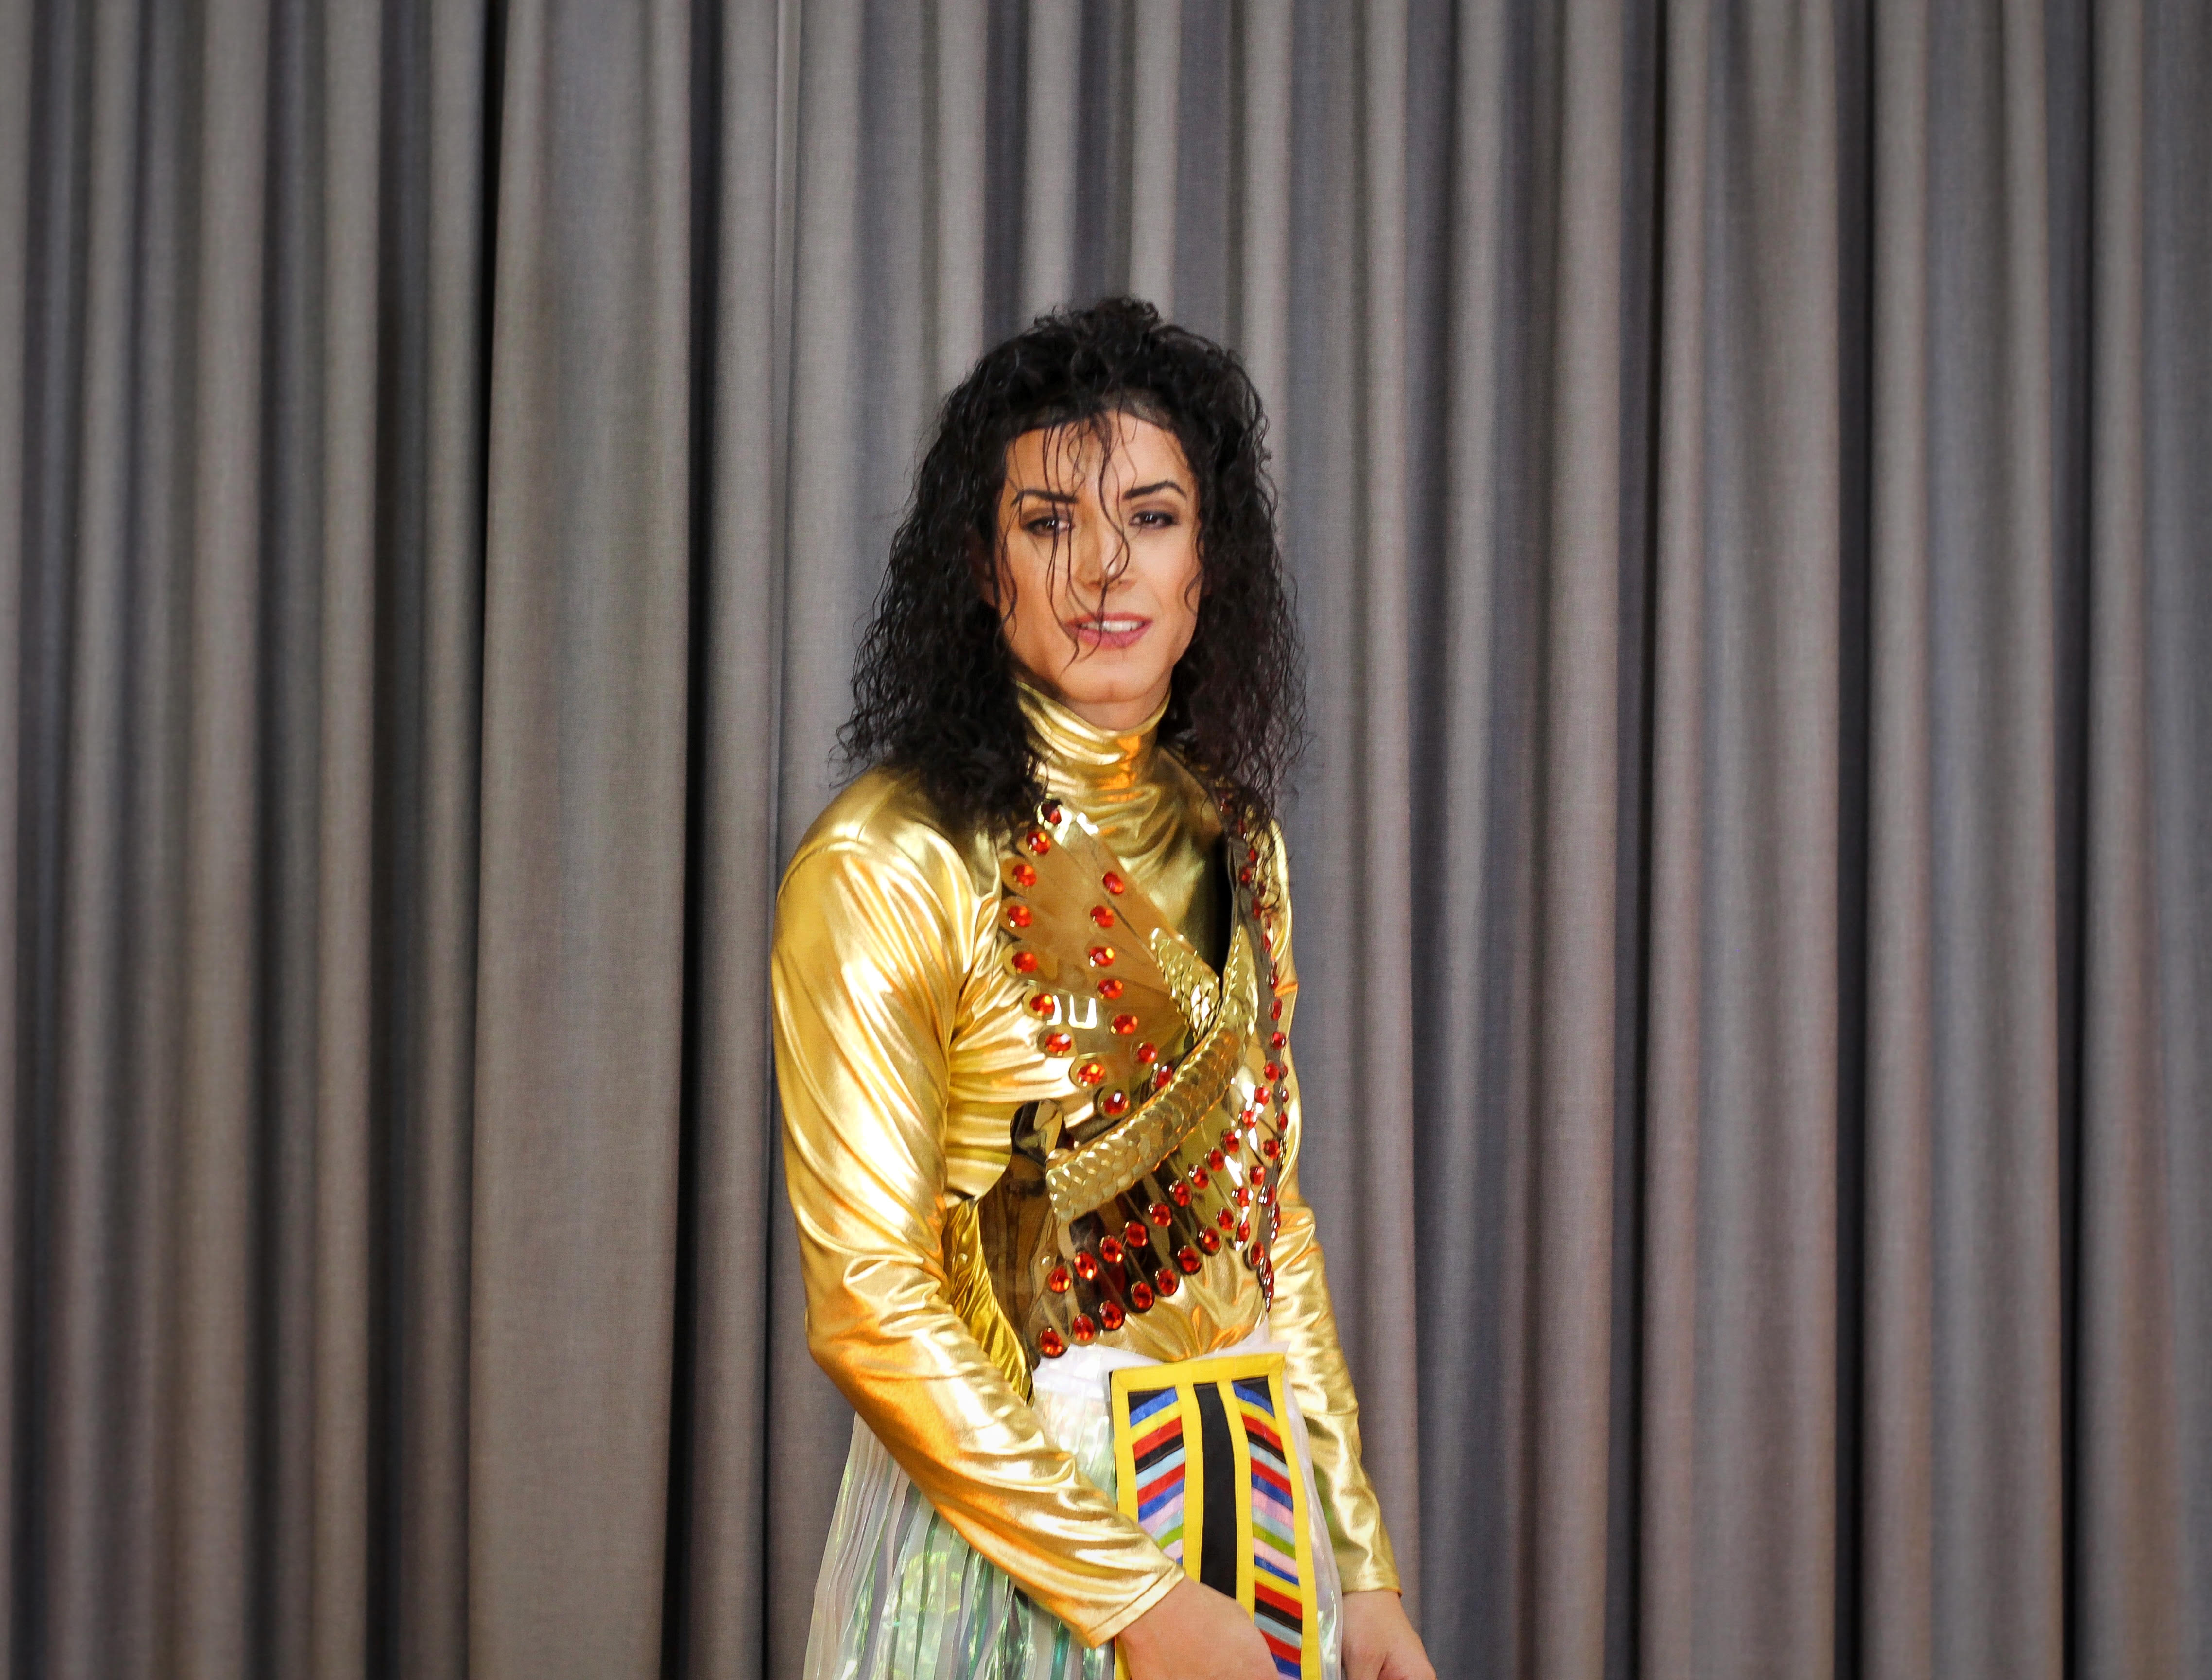 SacMjj, imitador de Michael Jackson: "La meta és que els seus fills em vegin"